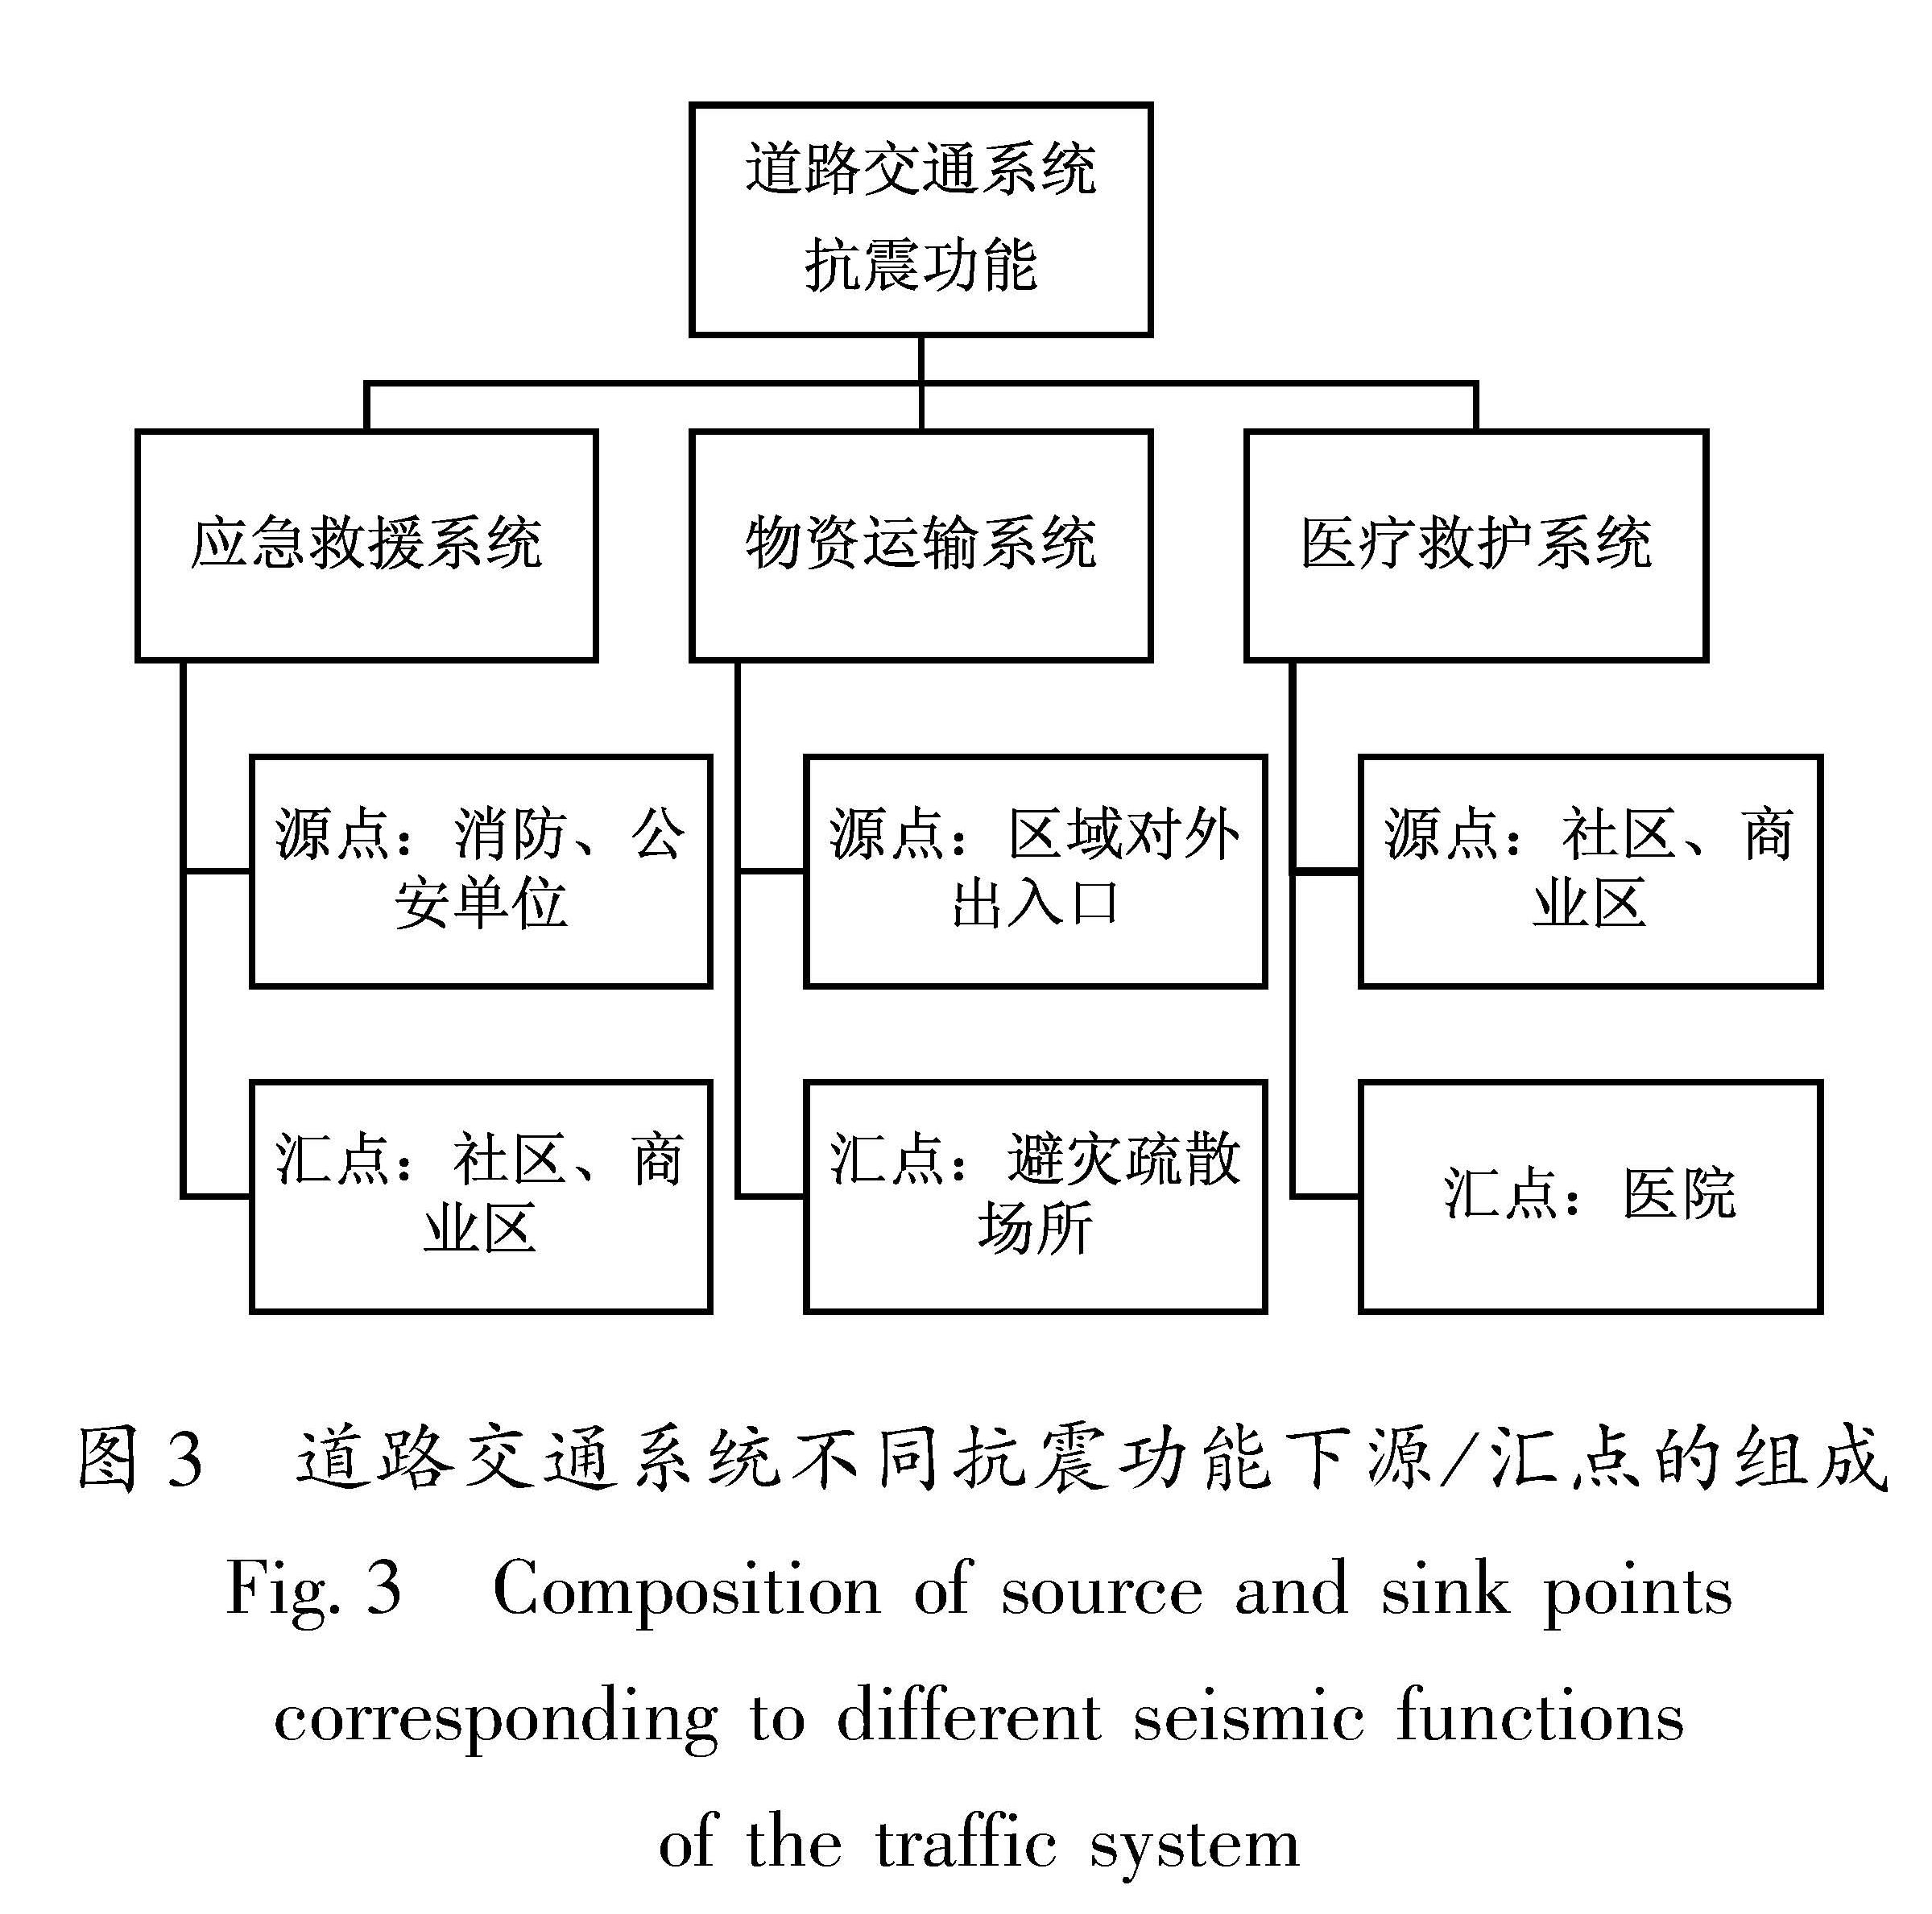 图3 道路交通系统不同抗震功能下源/汇点的组成<br/>Fig.3 Composition of source and sink points corresponding to different seismic functions of the traffic system